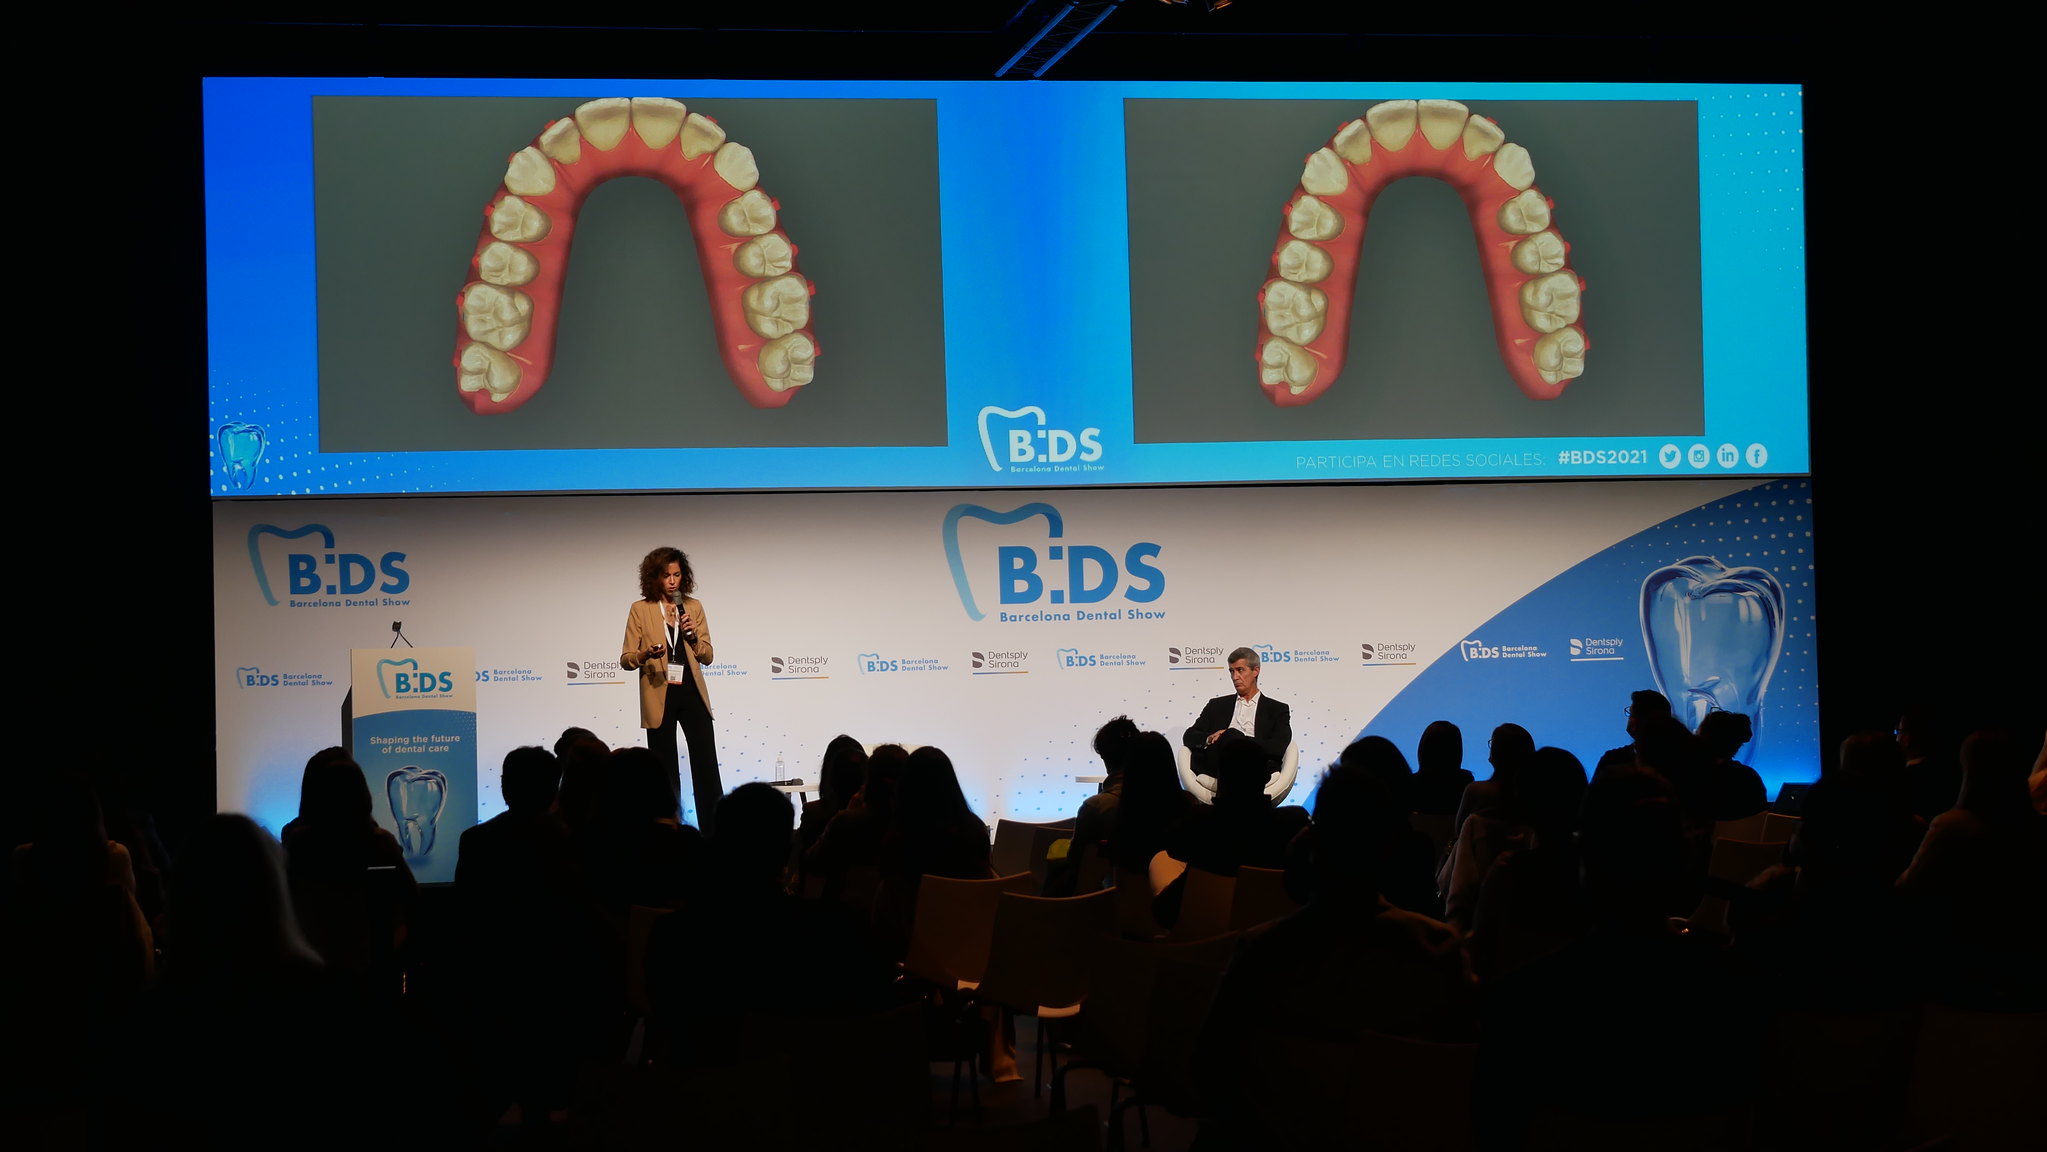 Ortodoncia invisible, ácido hialurónico y carillas: BDS2023 desvelará las últimas tendencias en estética dental